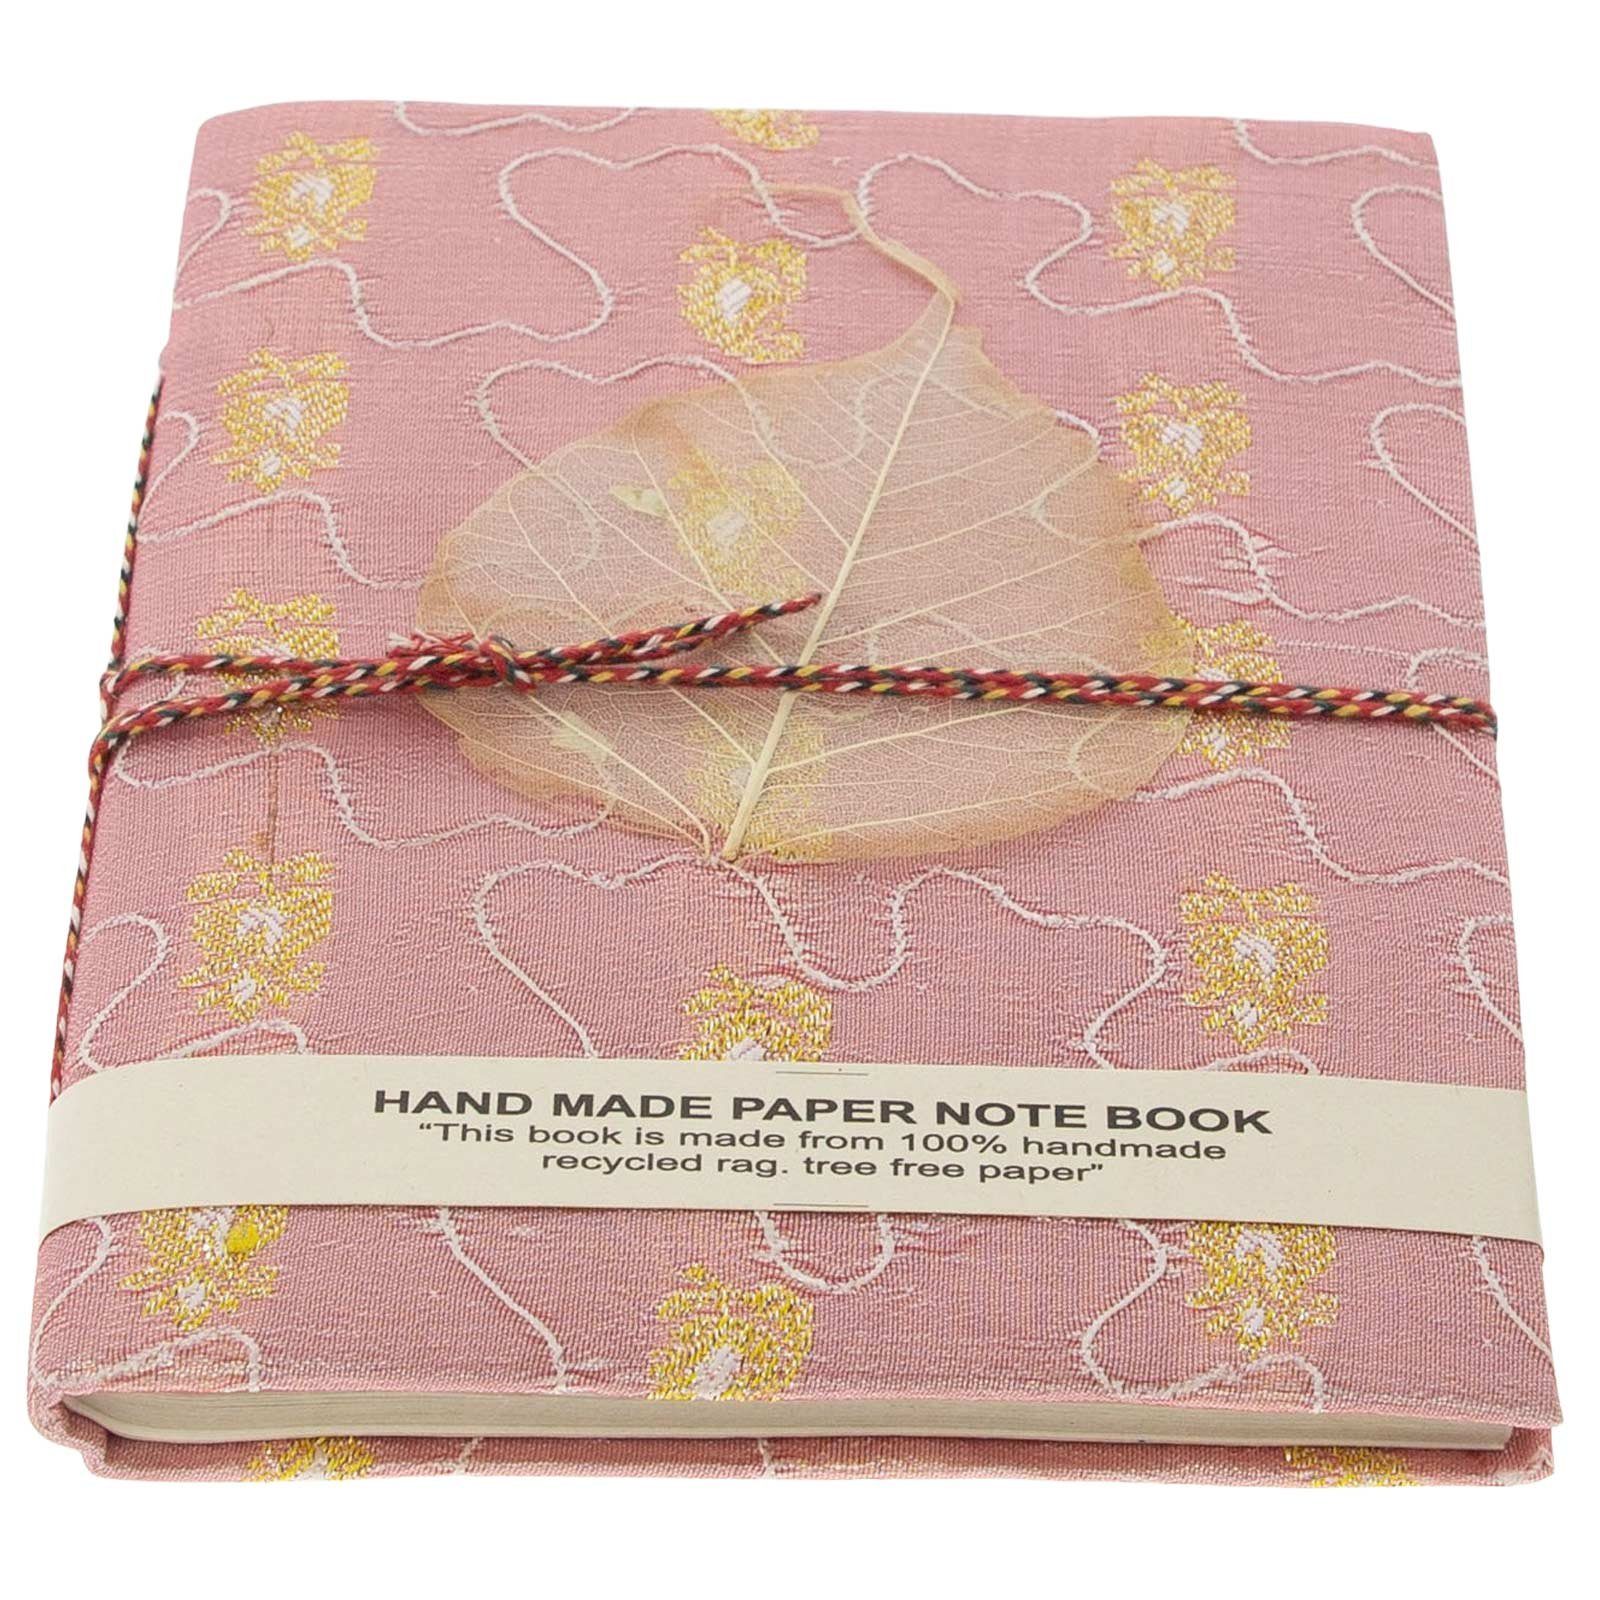 Tagebuch Sari Tagebuch handgefertigt Poesie MAGIE UND Baumwollpapier-Notizbuch 10x15cm KUNST